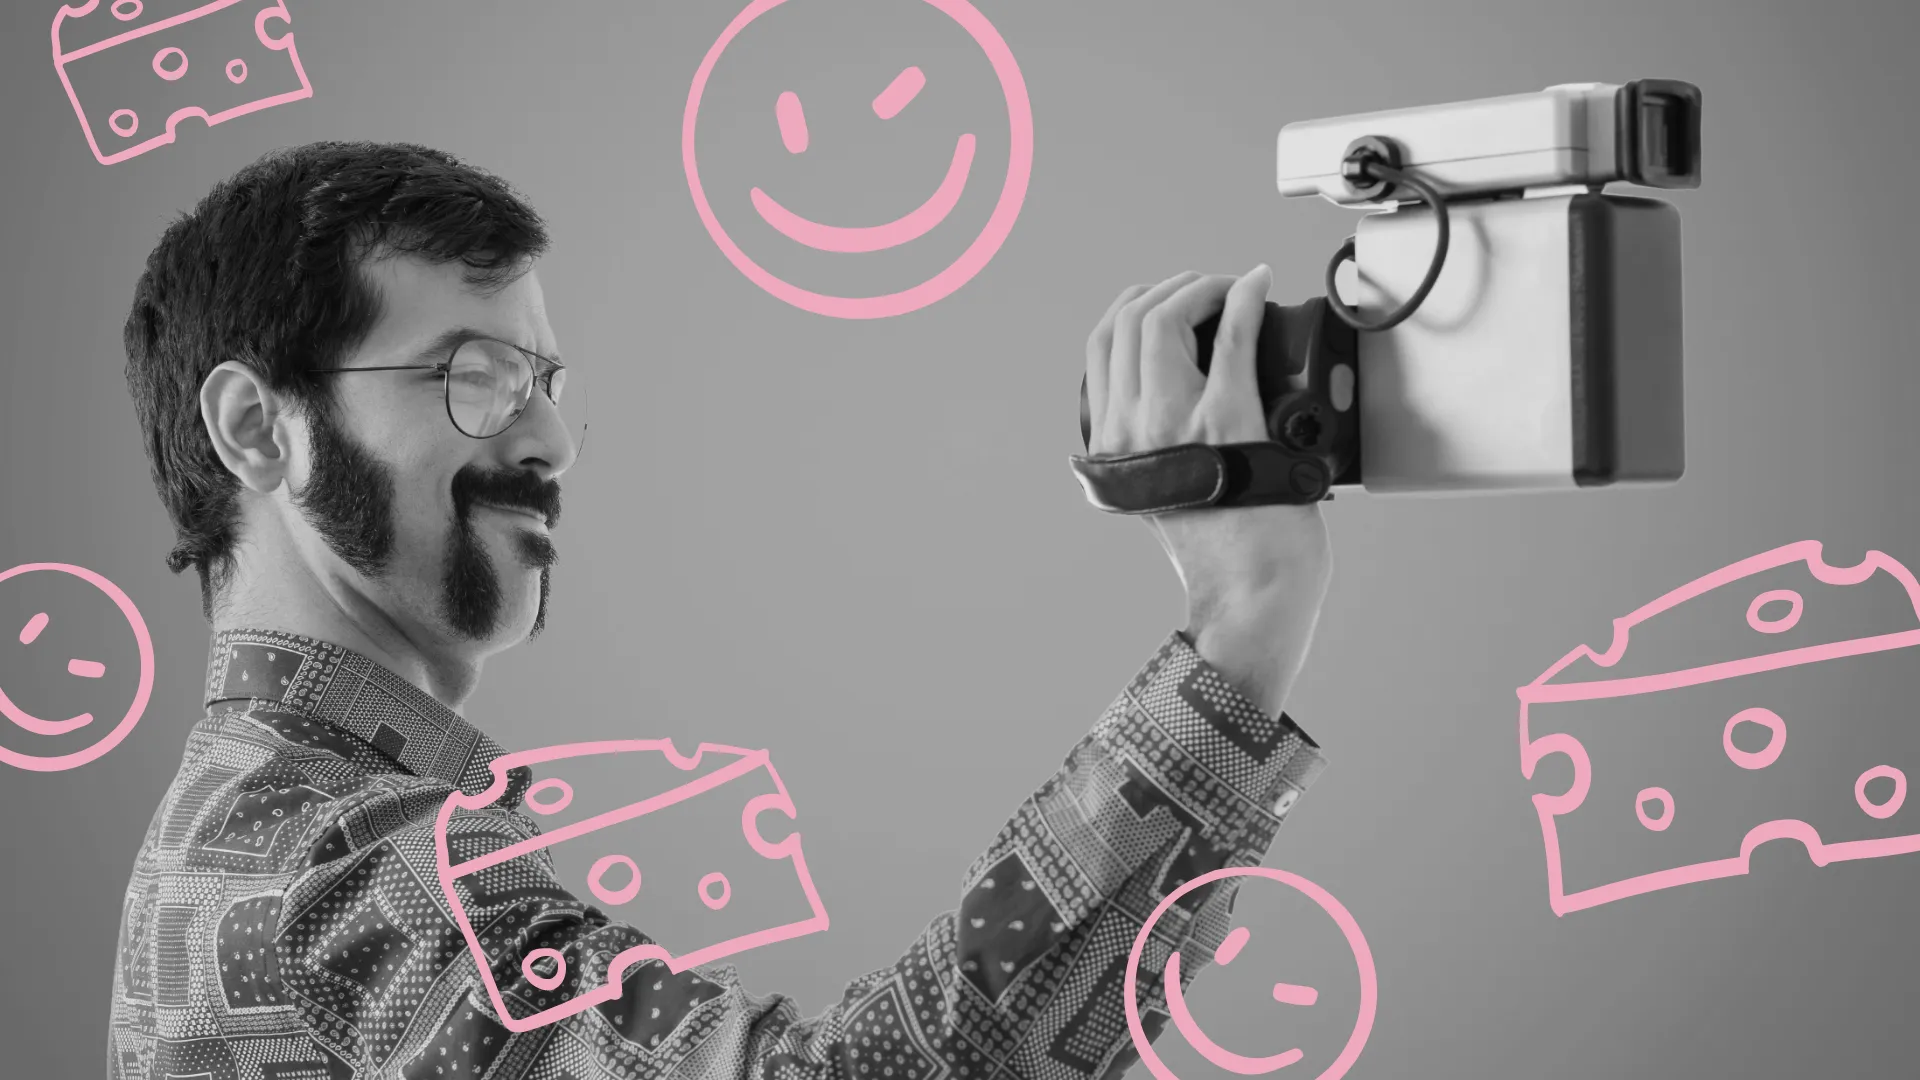 Ein Bild zeigt einen Mann mit Bart und Brille, der eine Videokamera in der Hand hält.